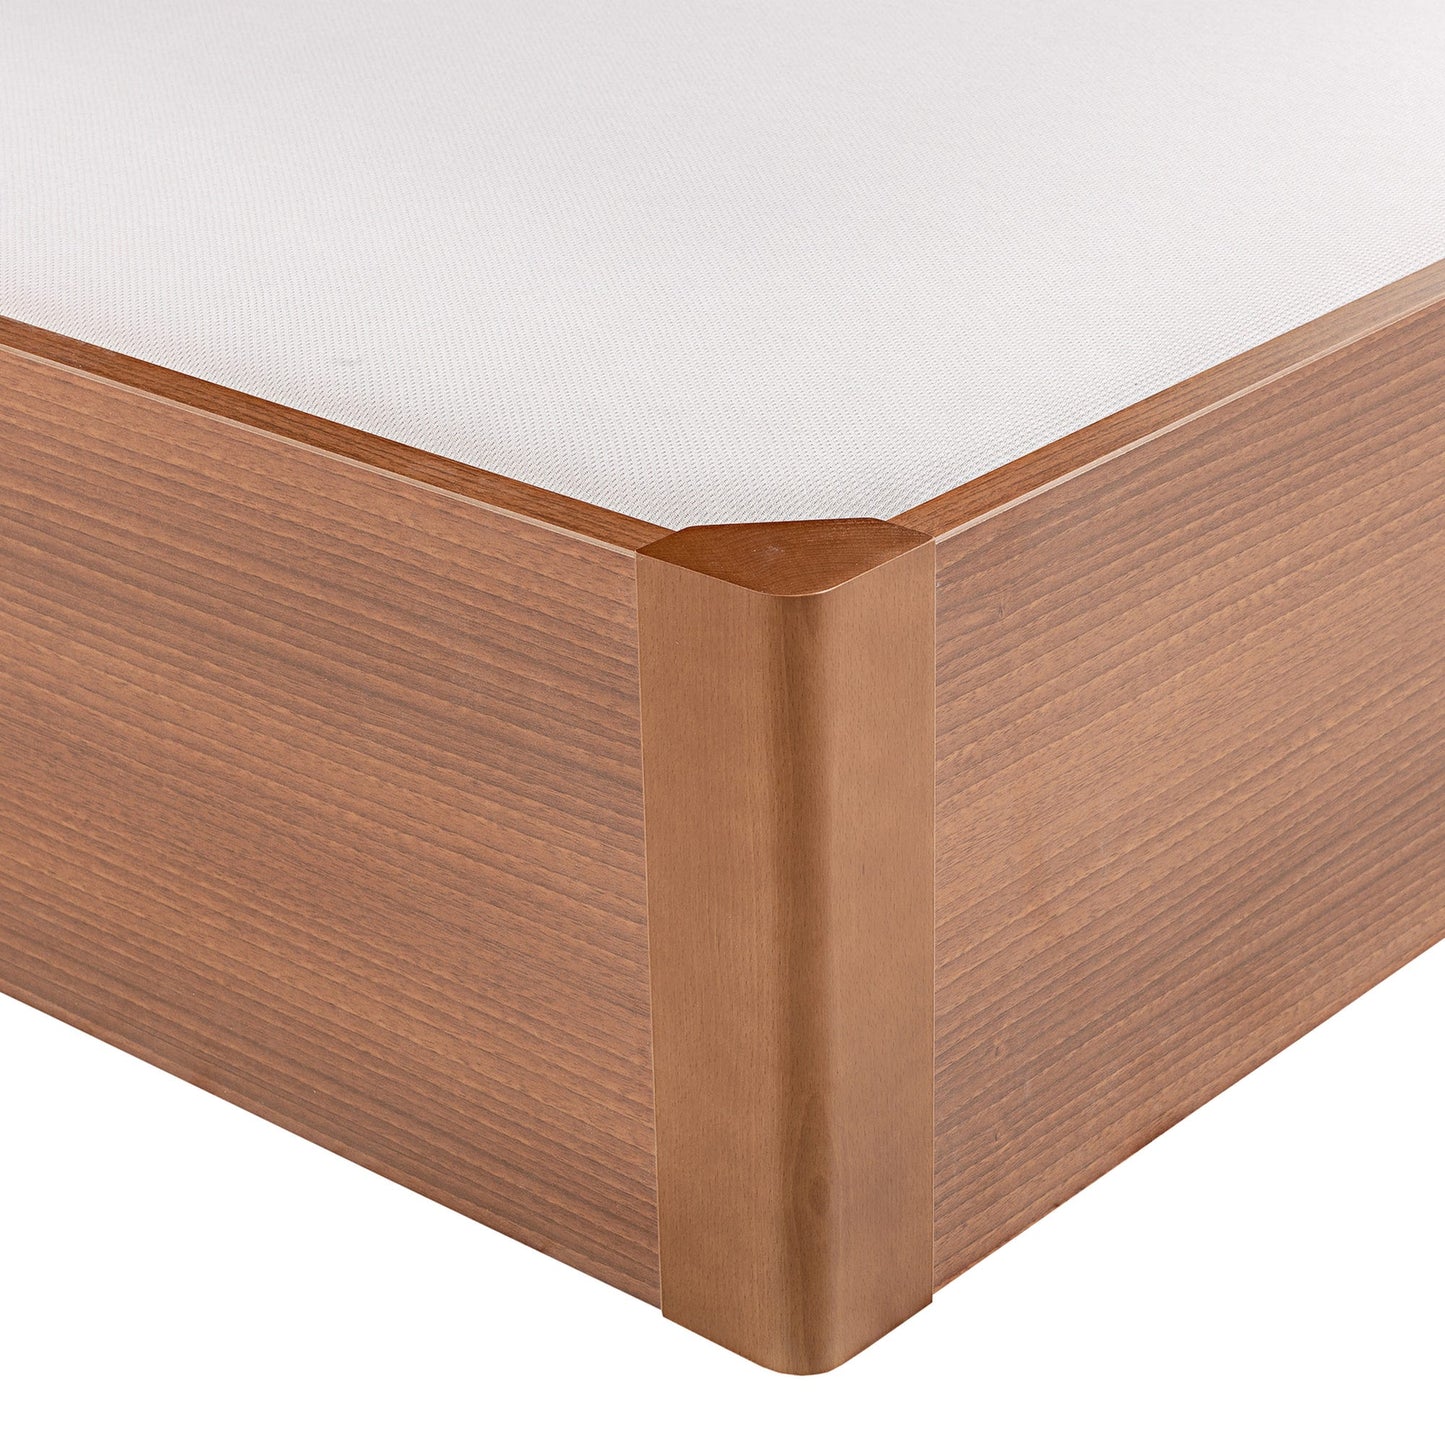 Canapé abatible de madera tapa única de color cerezo - DESIGN - 90x190